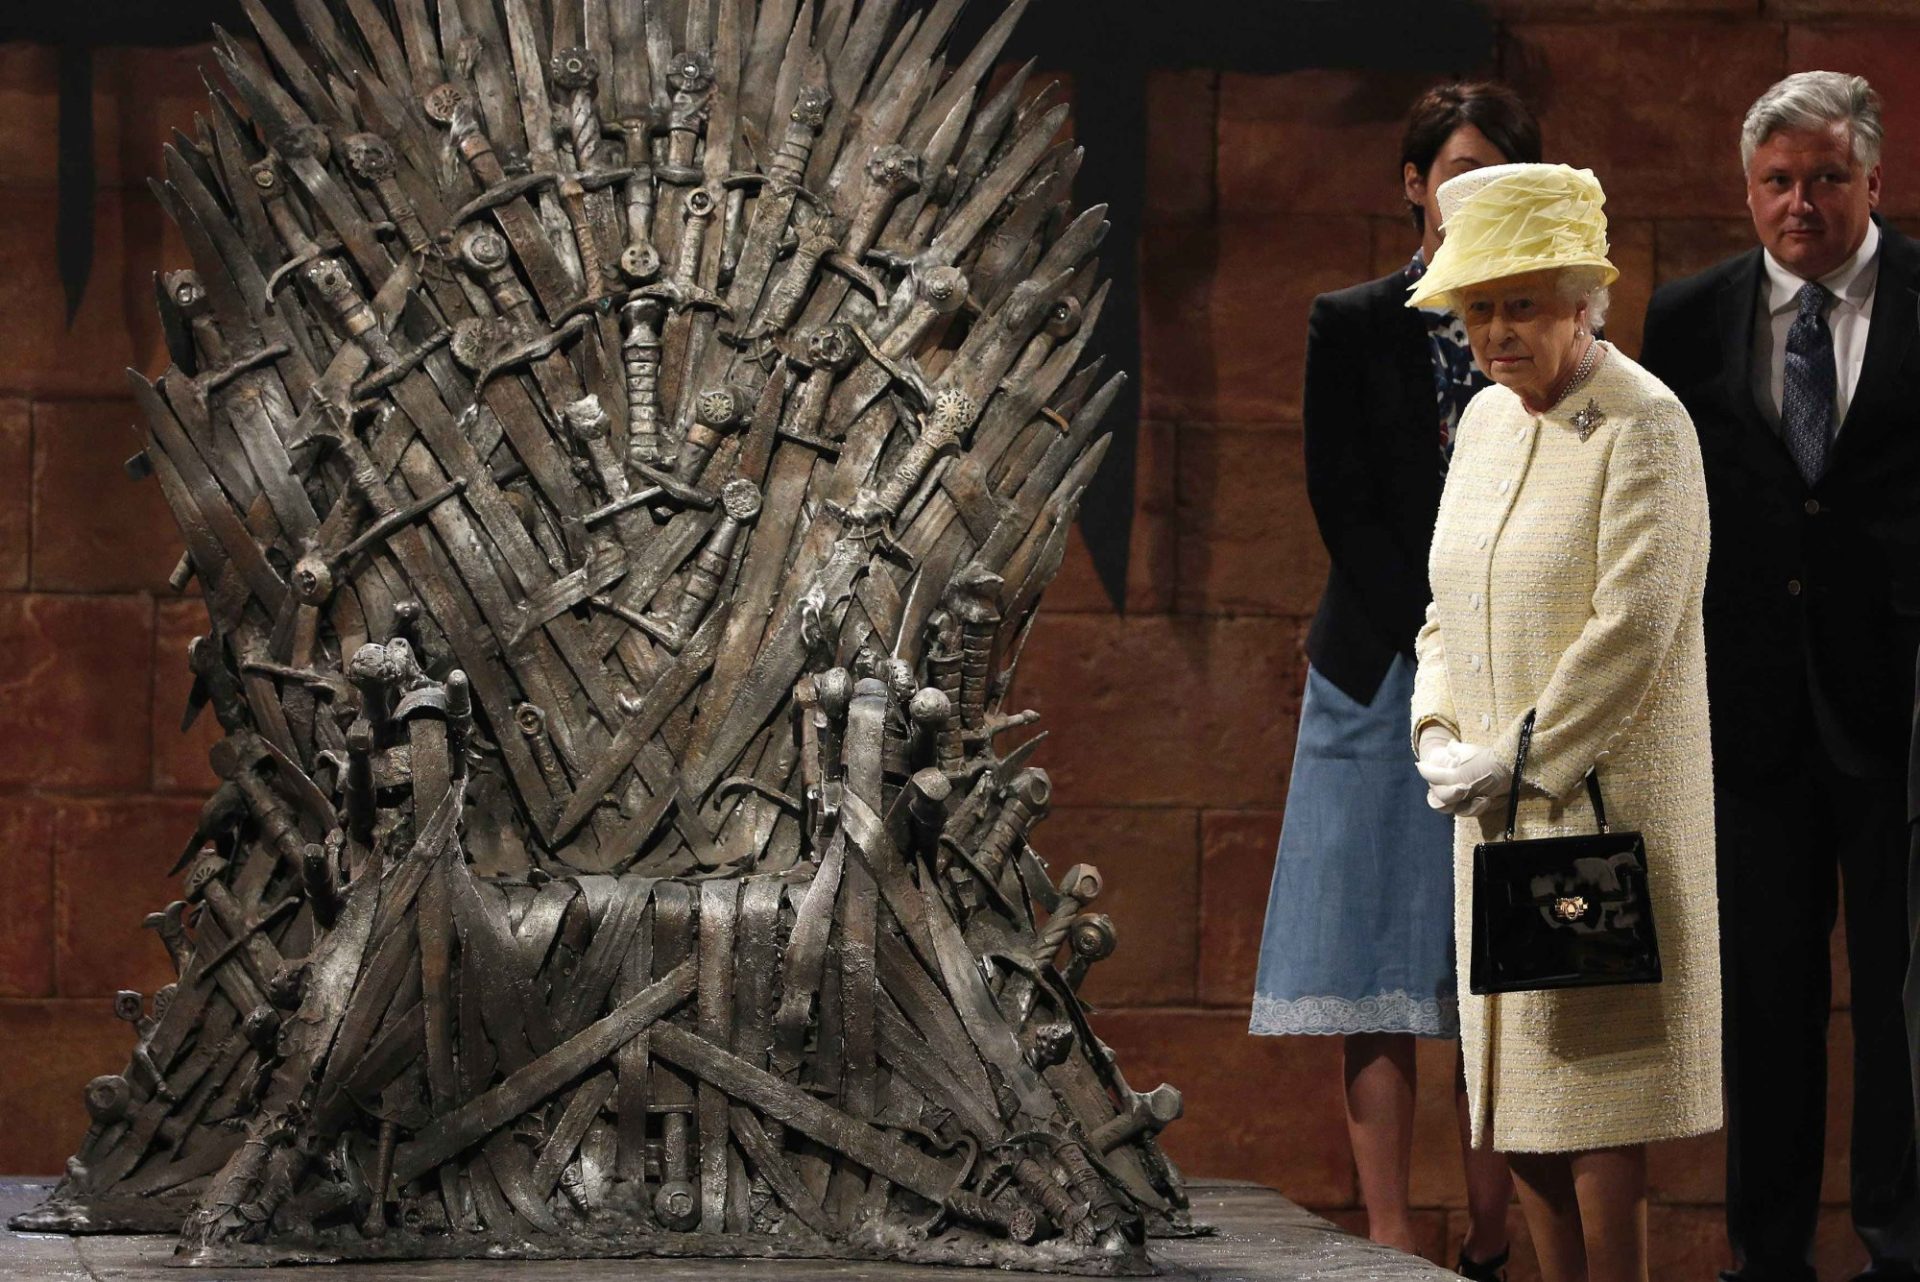 Rainha Isabel II visita set do Game of Thrones. Mas não se senta no Trono de Ferro